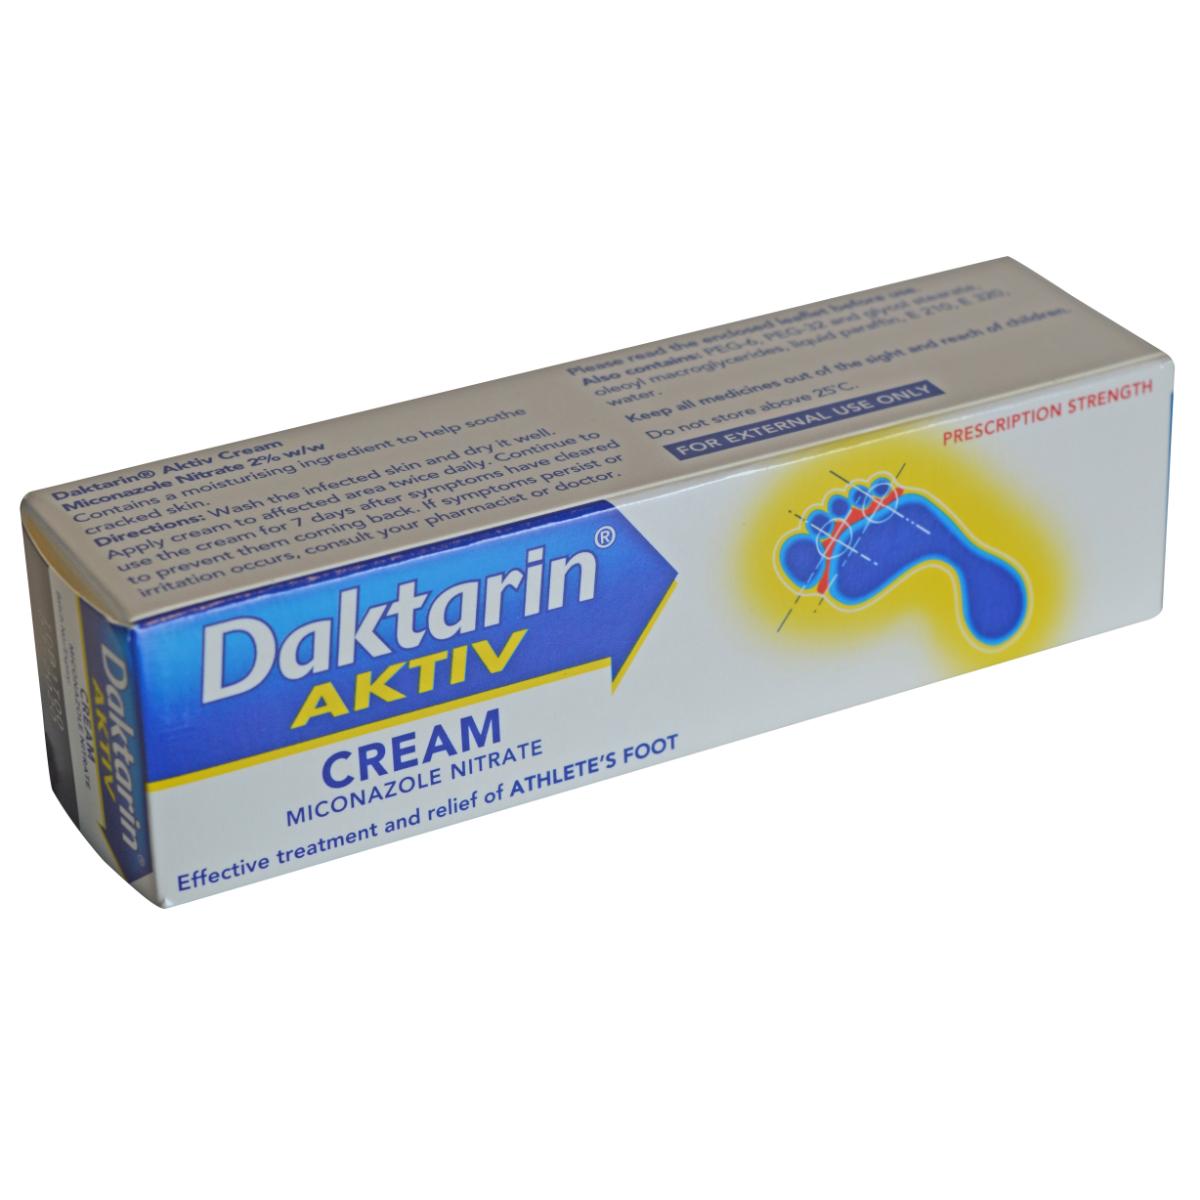 DAKTARIN (miconazole 2%) DUAL ACTION 30G